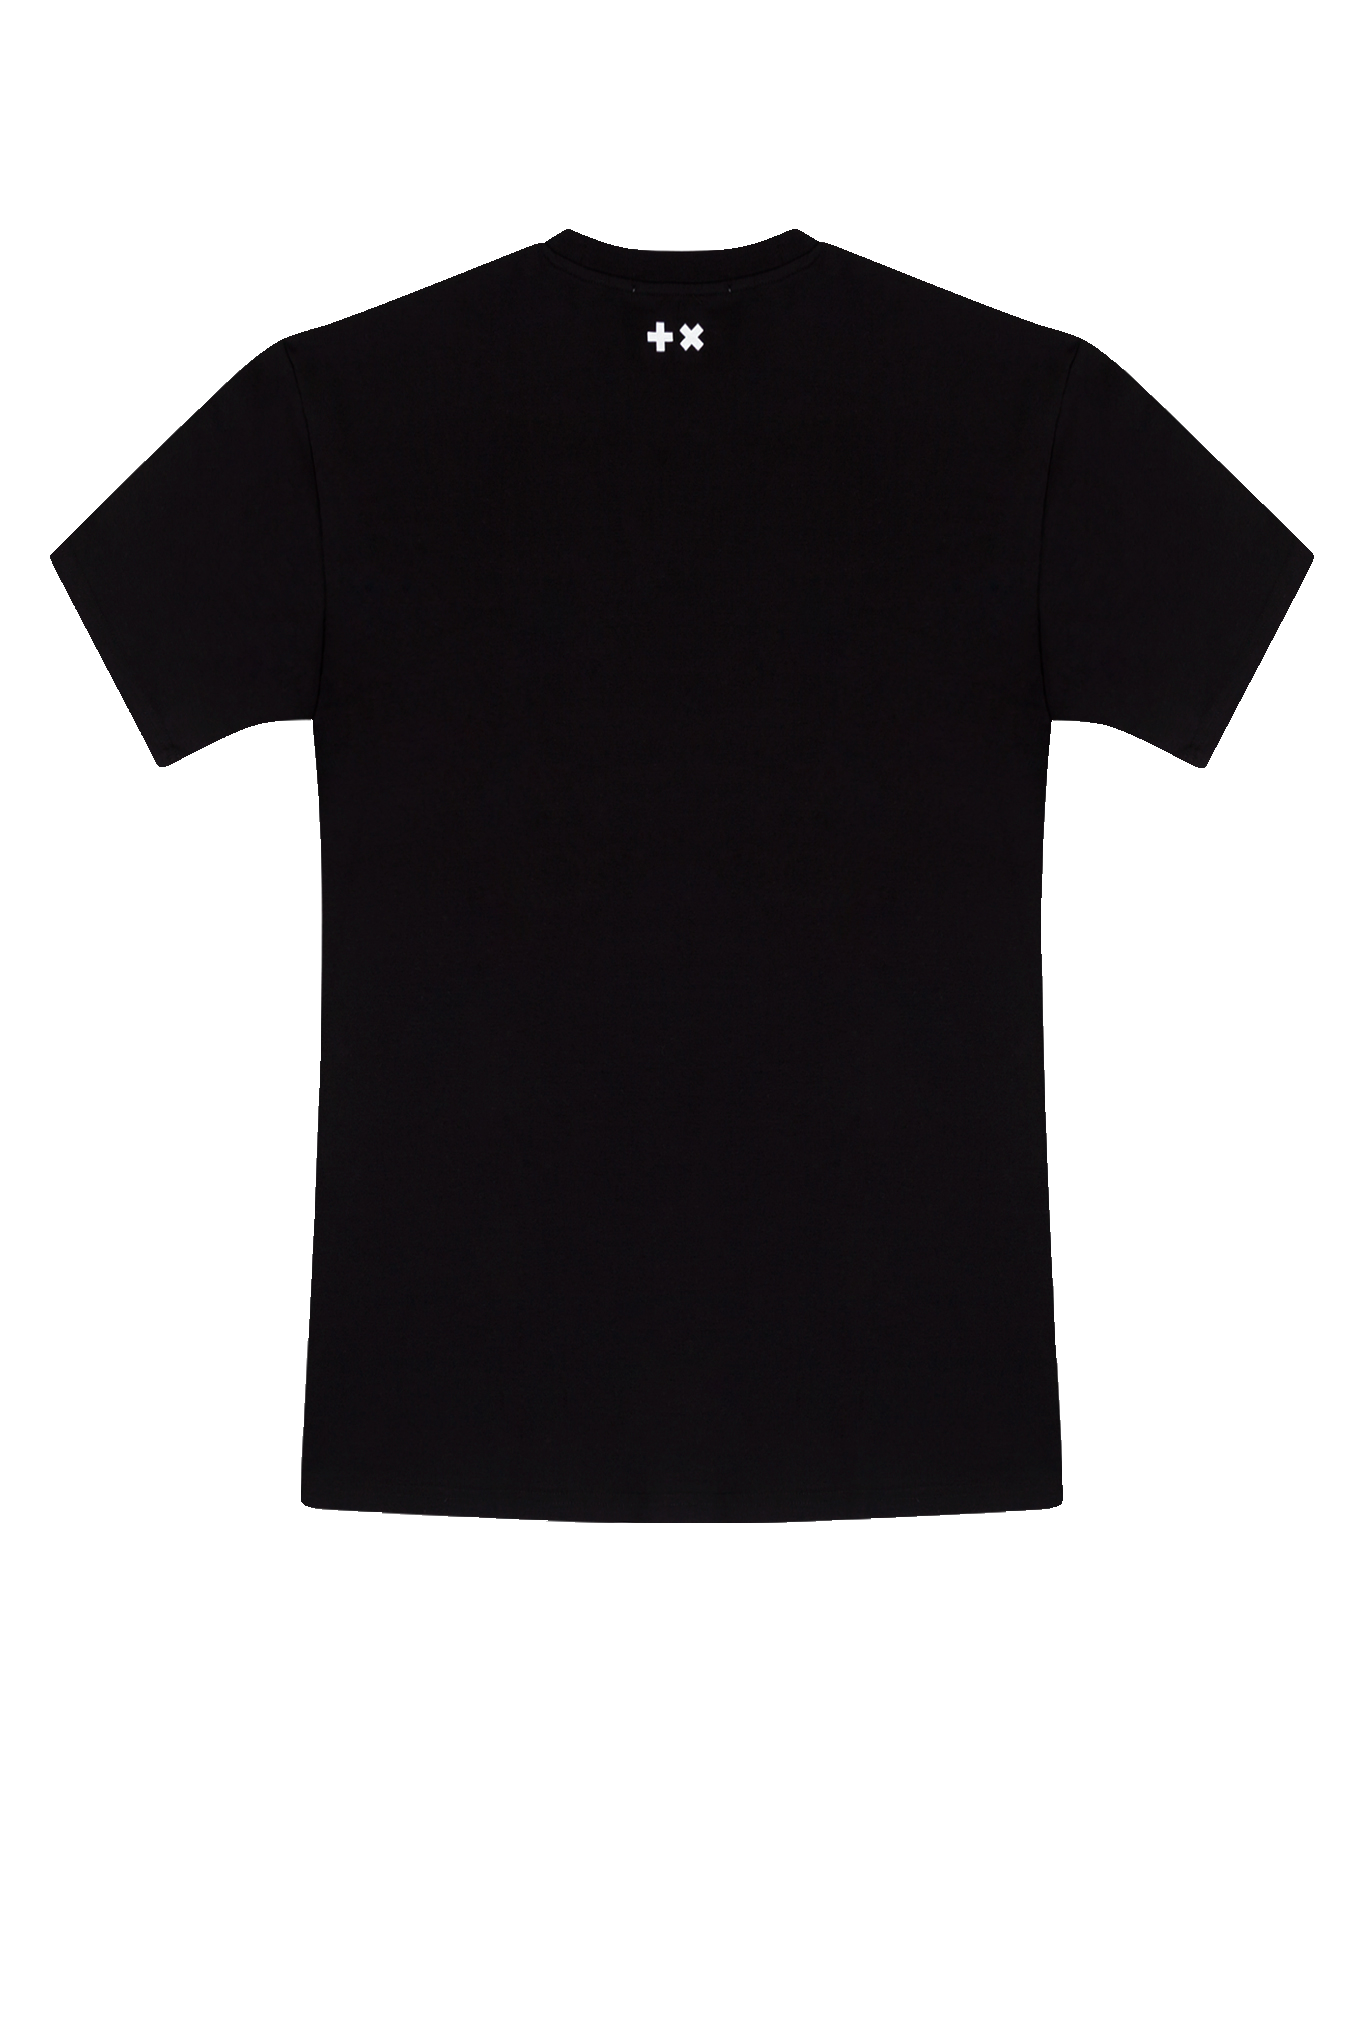 Cotton Black T-Shirt PNG Photo Image